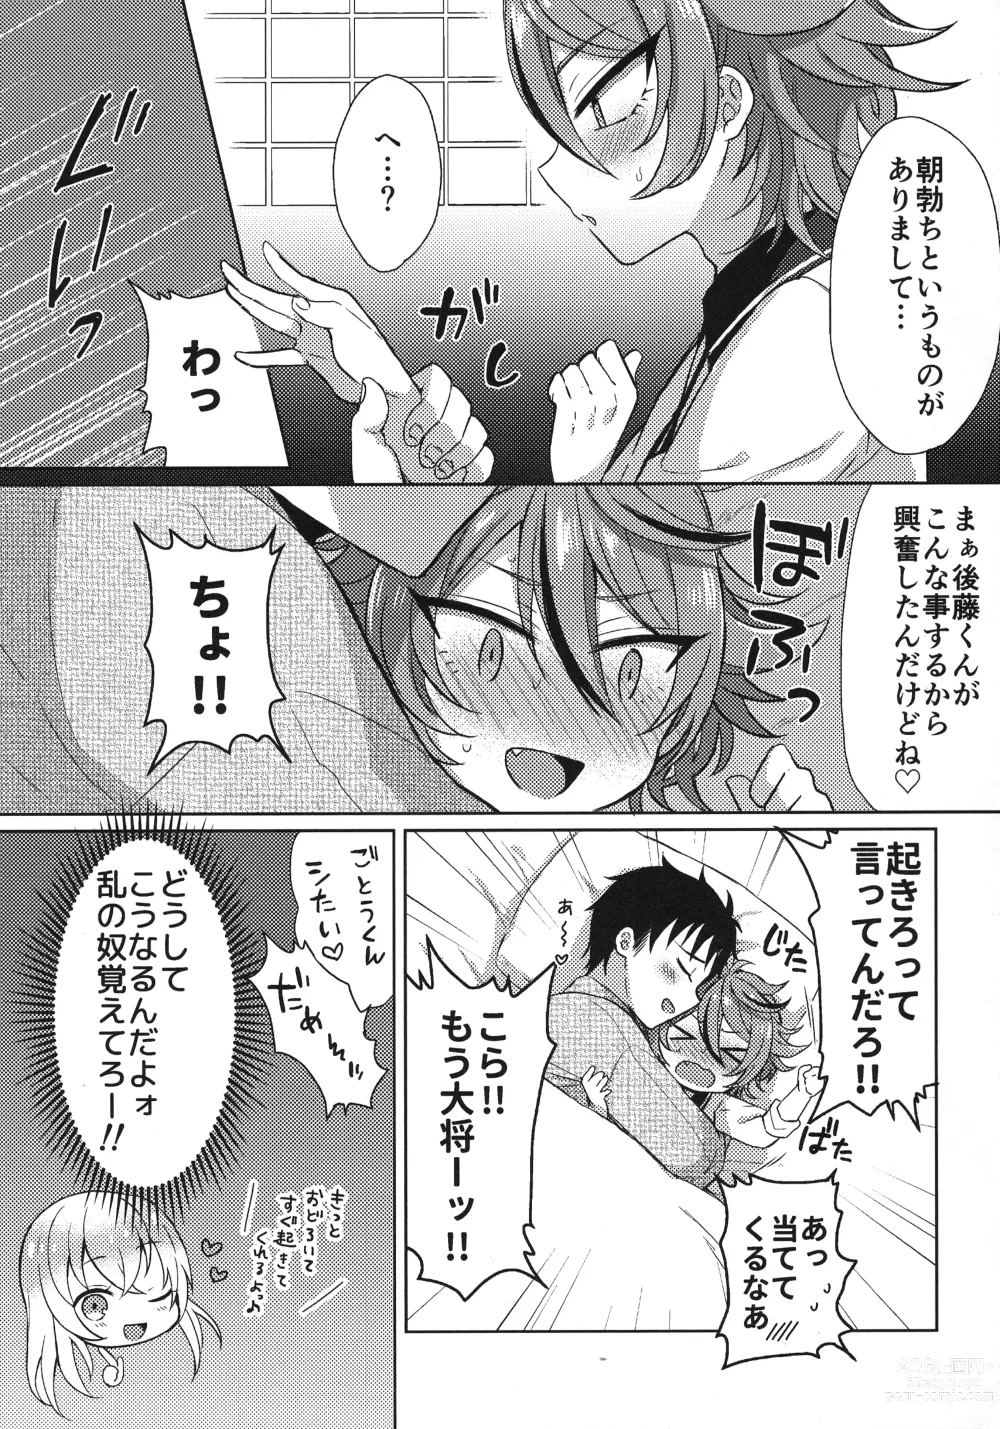 Page 194 of doujinshi Sanigoto Sairoku!